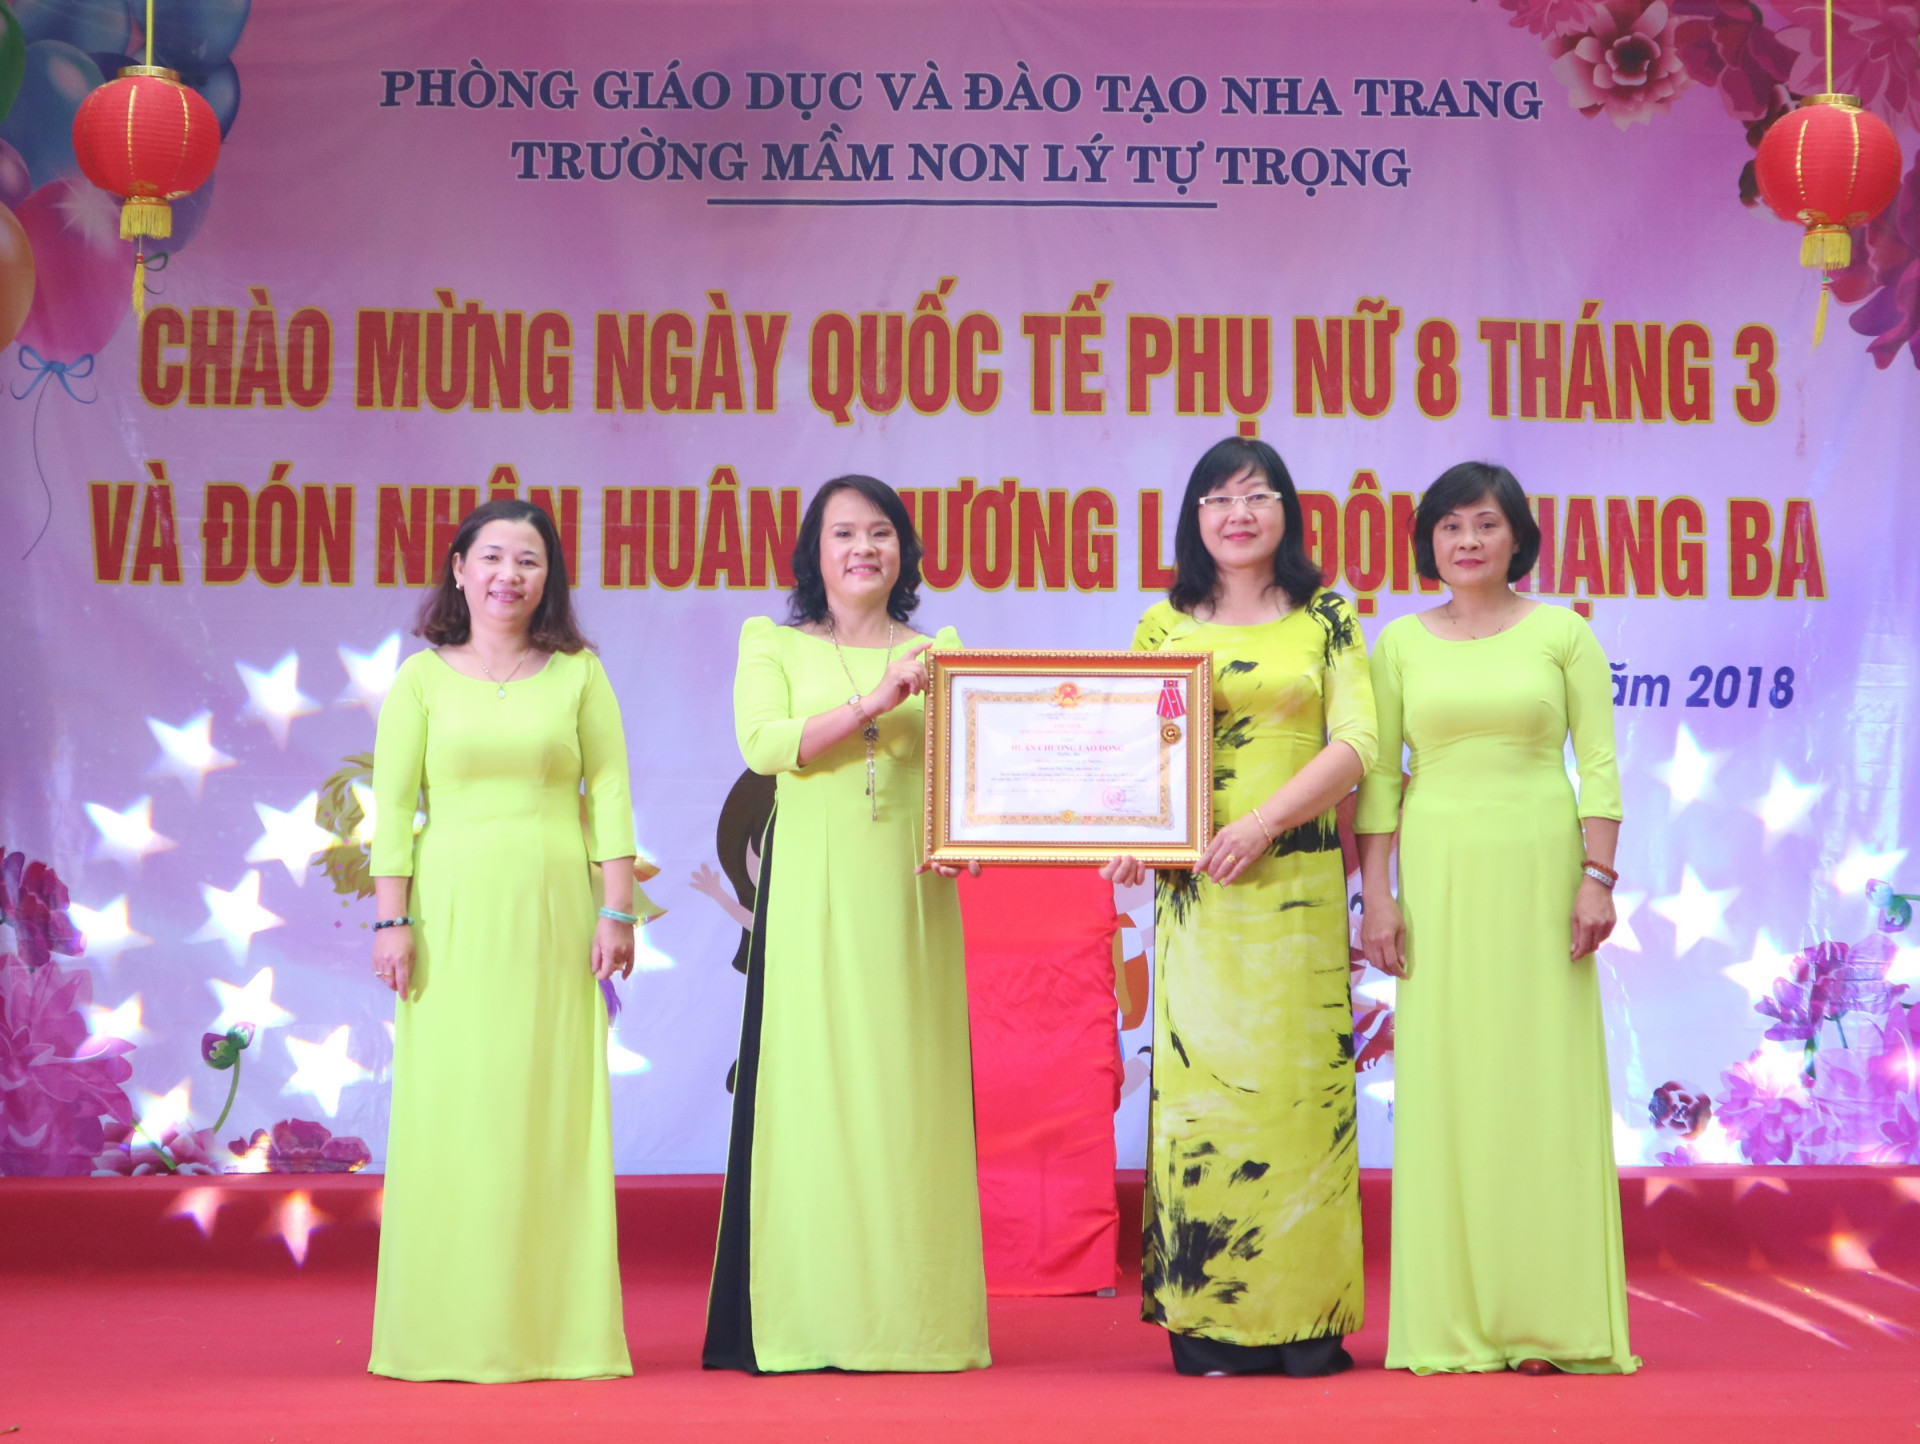 Lãnh đạo Sở Giáo dục và Đào tạo Khánh Hòa trao Huân chương Lao động của Chủ tịch nước cho nhà trường.